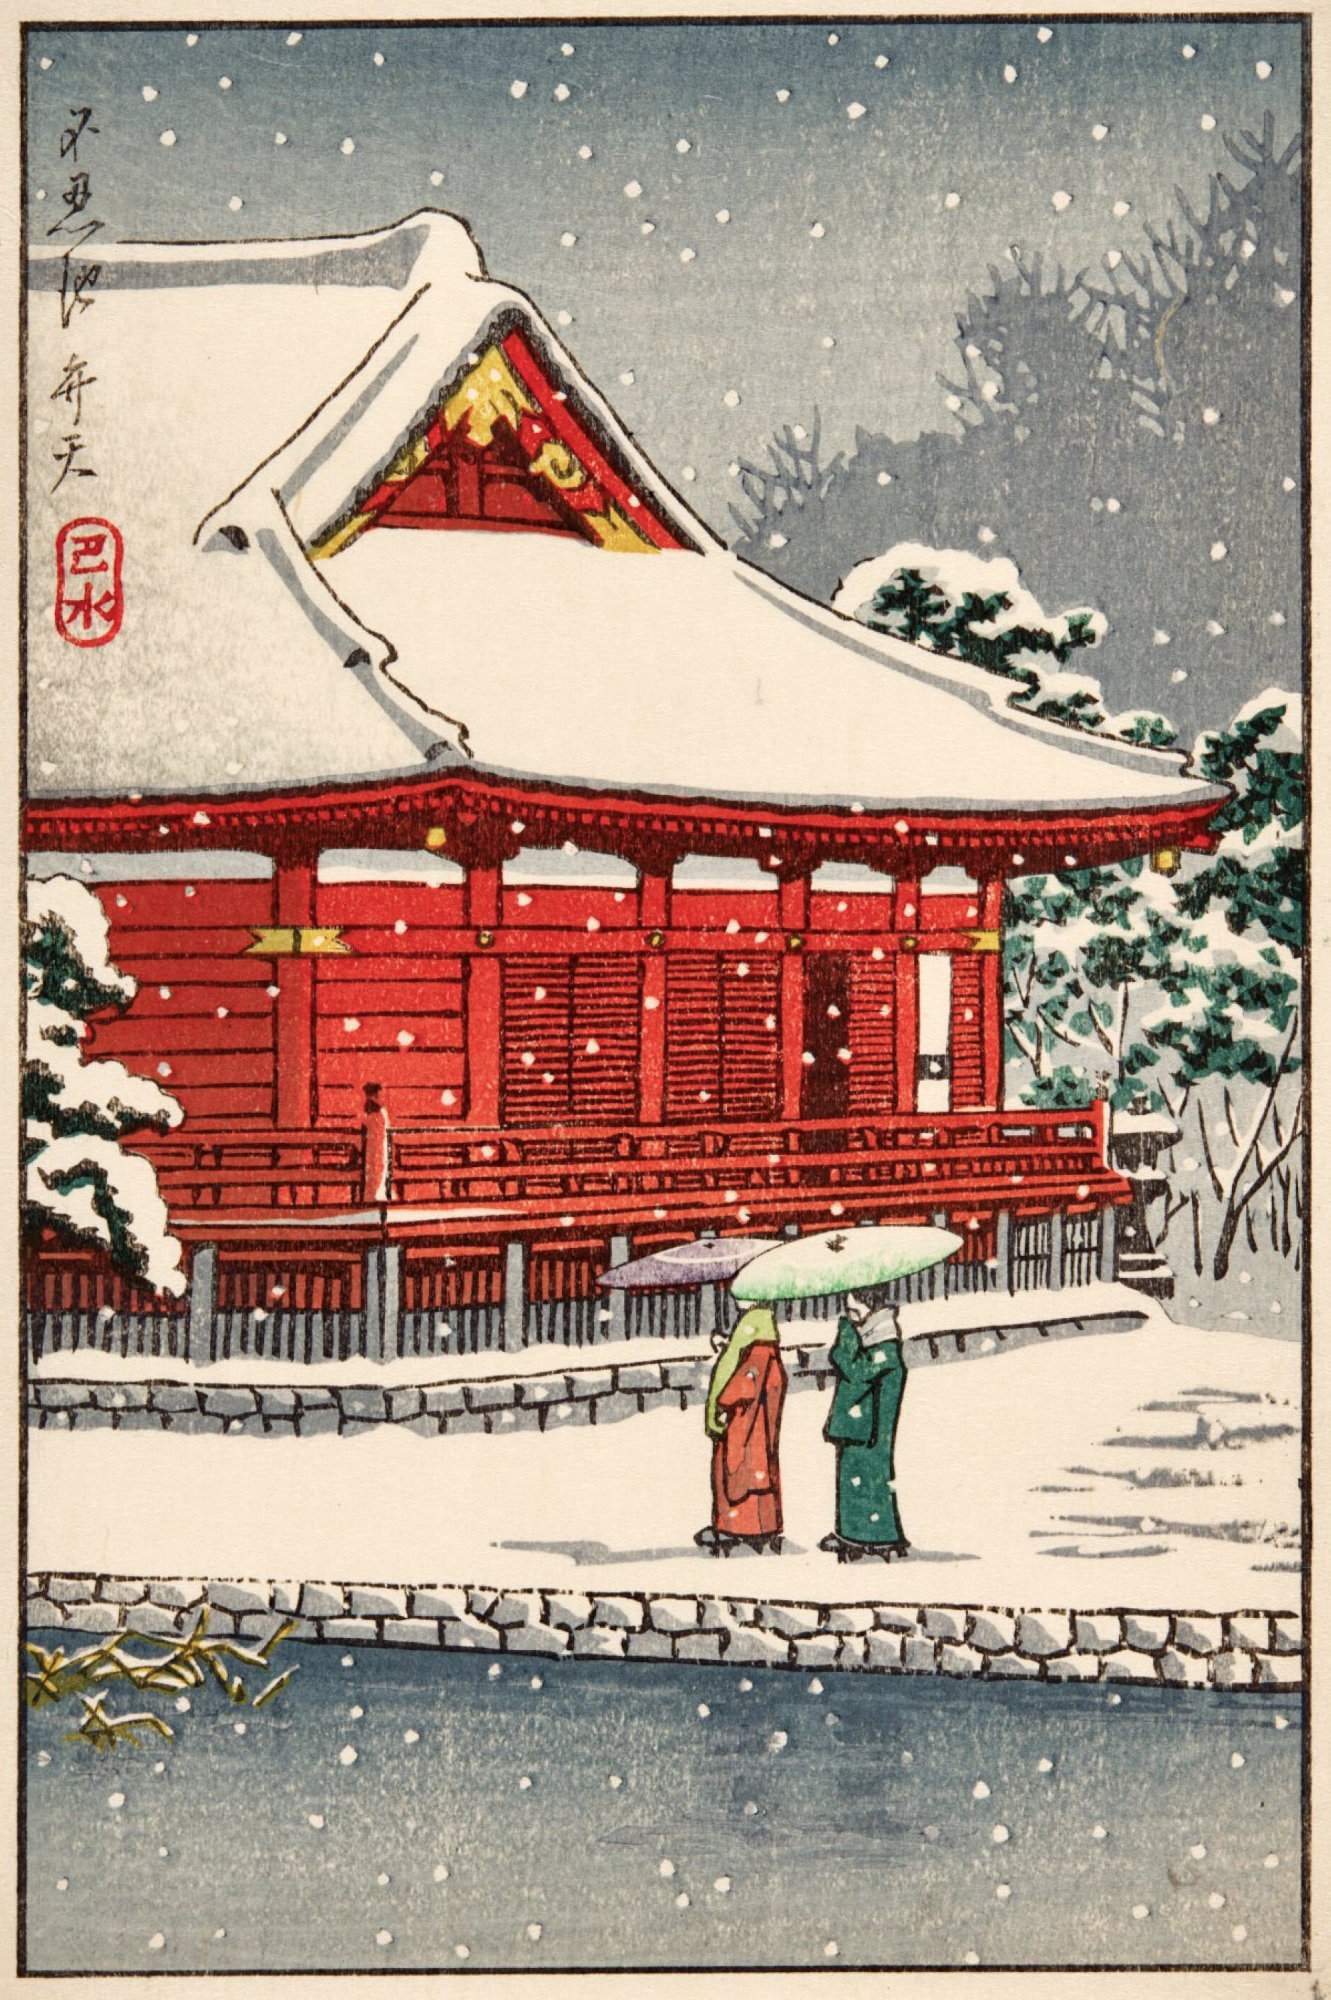 Benten Shrine, Shinobazu Pond - Kawase Hasui Catalogue woodblock print